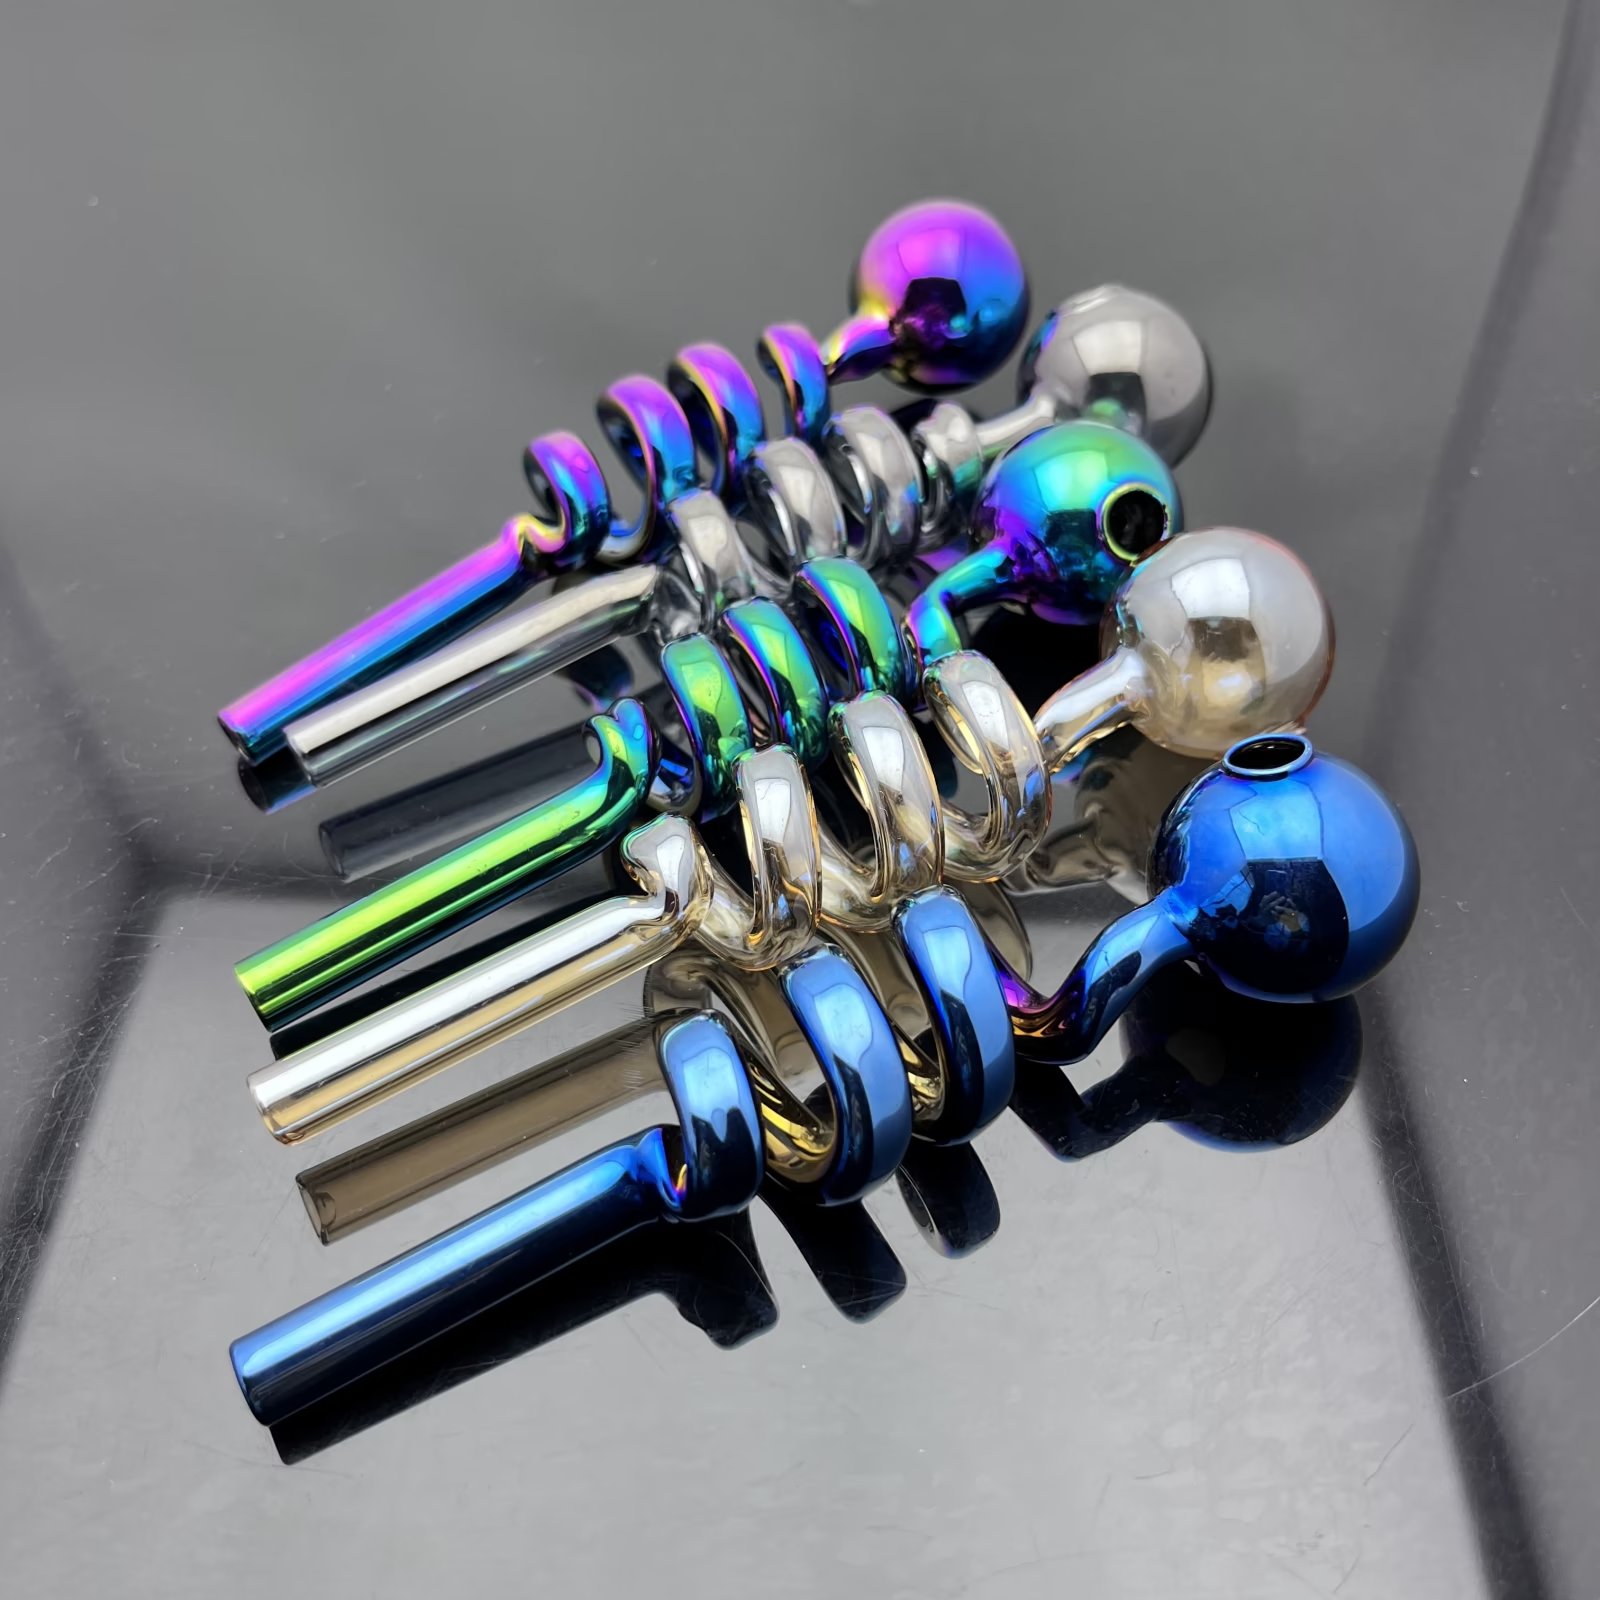 Стеклянная курительная труба вода кальян с несколькими цветными спиральными стеклянными трубами